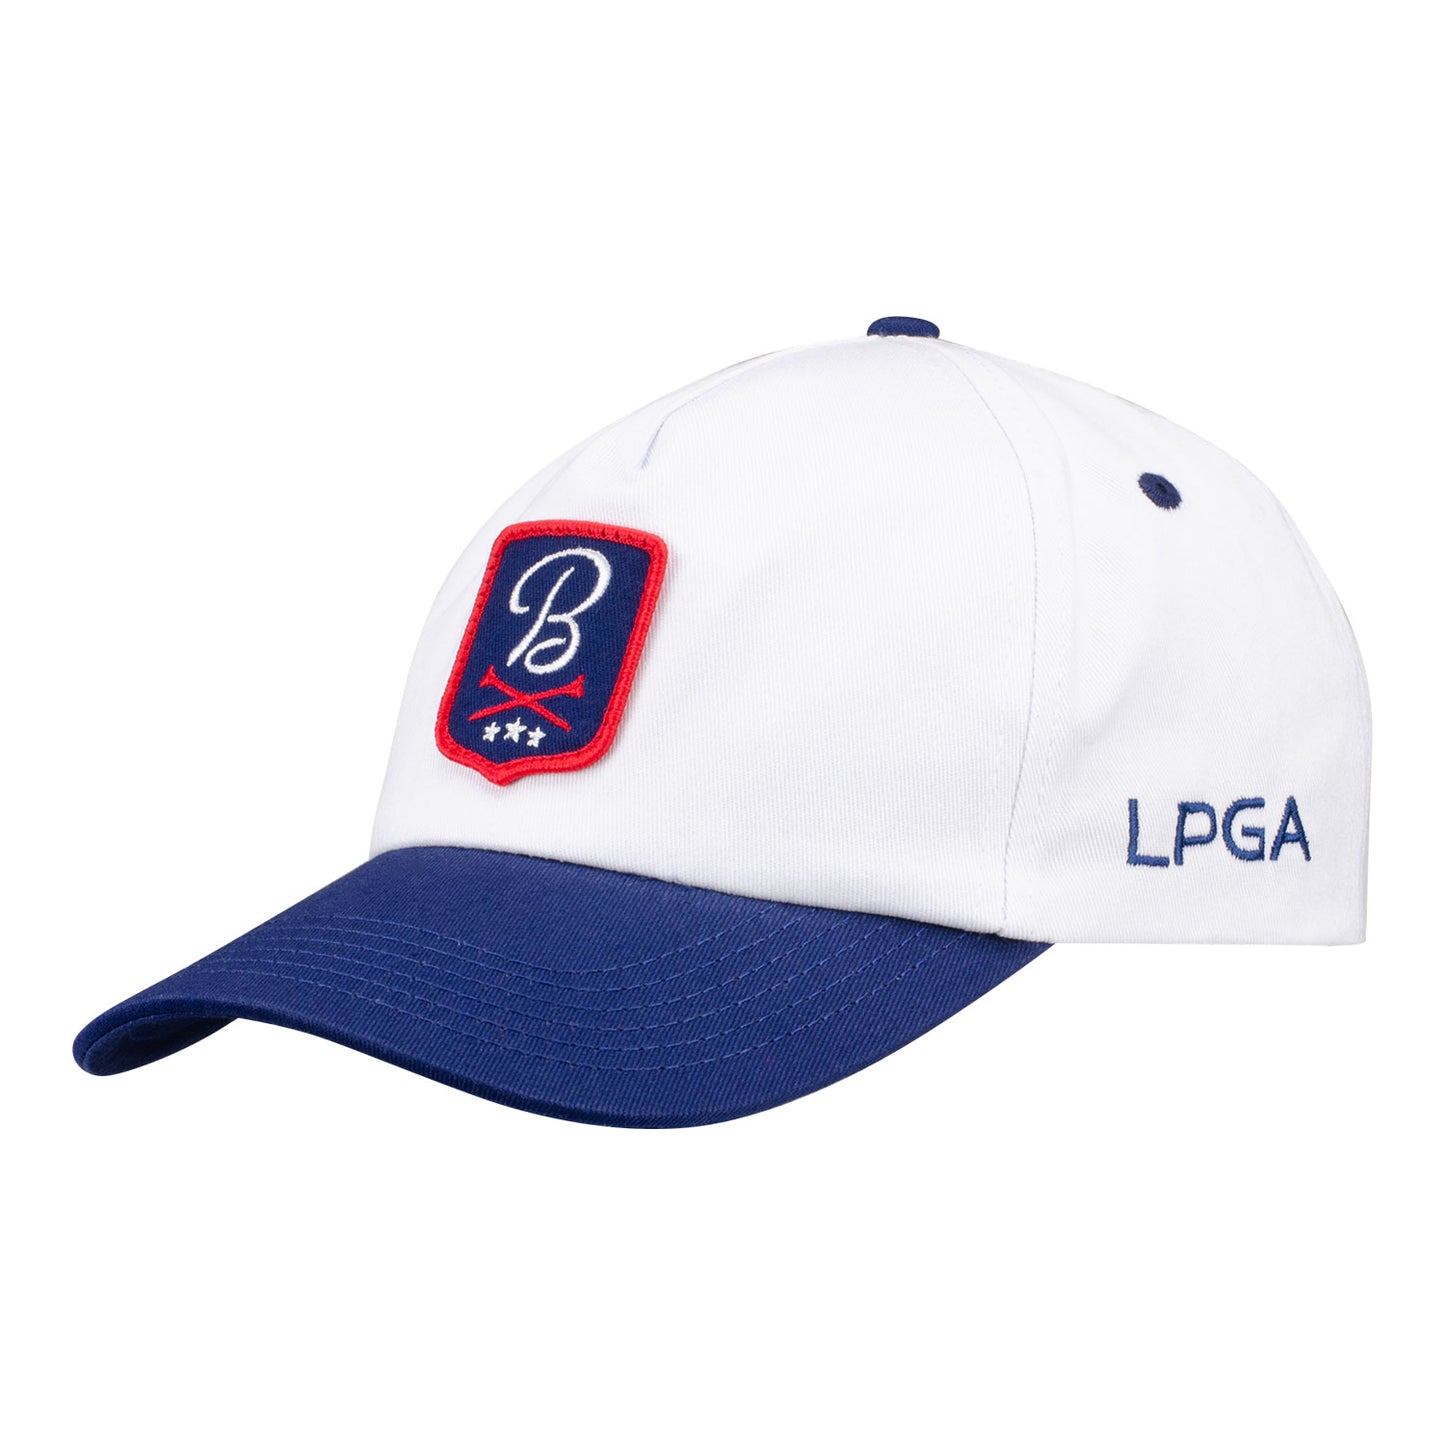 Barstool Golf LPGA USA Snapback - Angled Left Side View